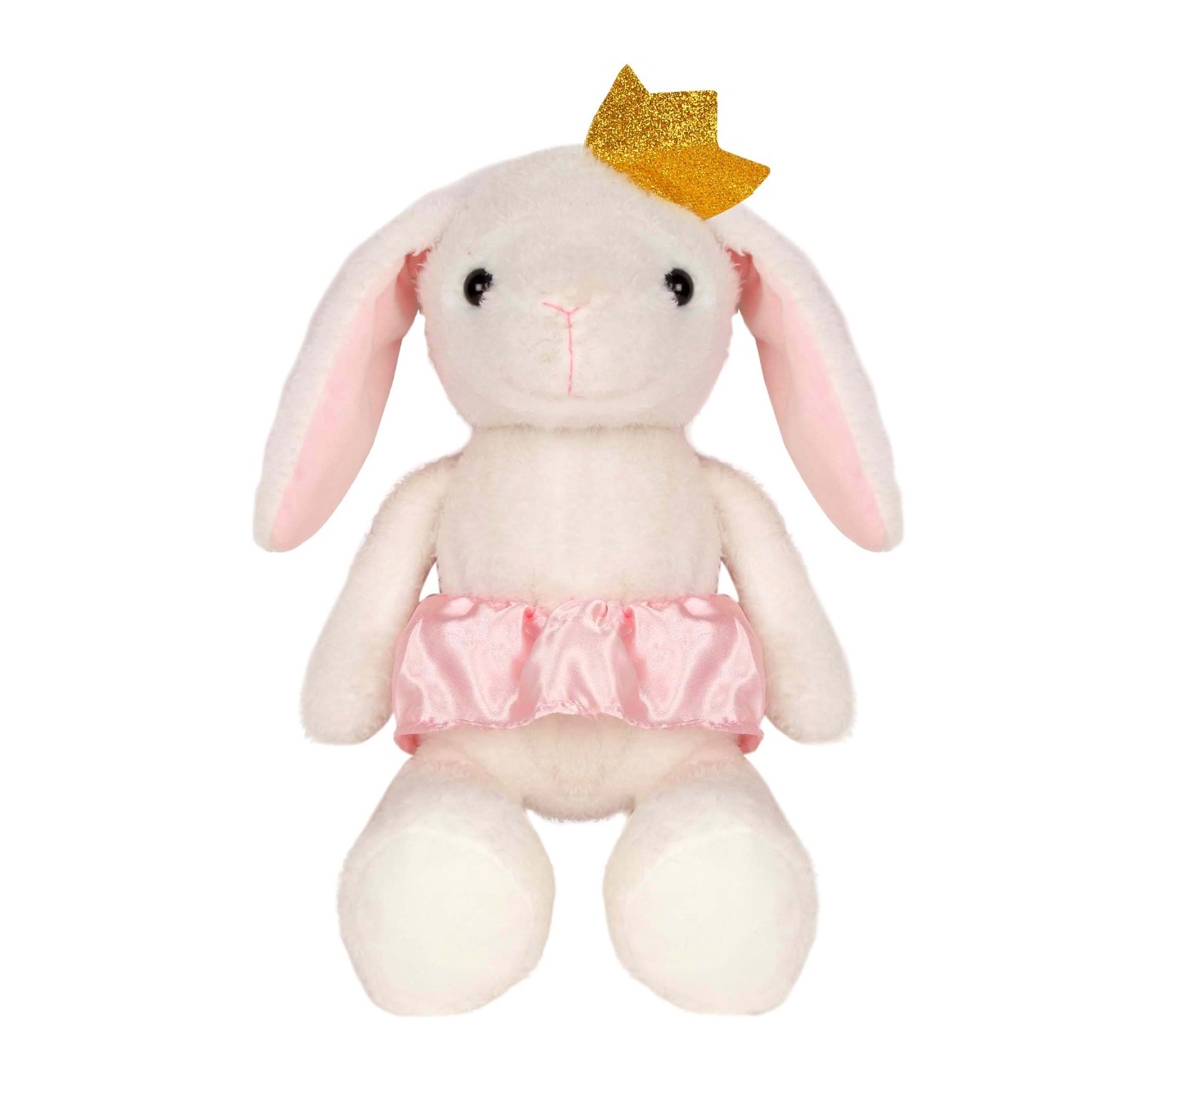 Fuzzbuzz | Fuzzbuzz Rabbit Soft Plush Toy - White - 40Cm Quirky Soft Toys for Kids age 0M+ - 10 Cm (White)